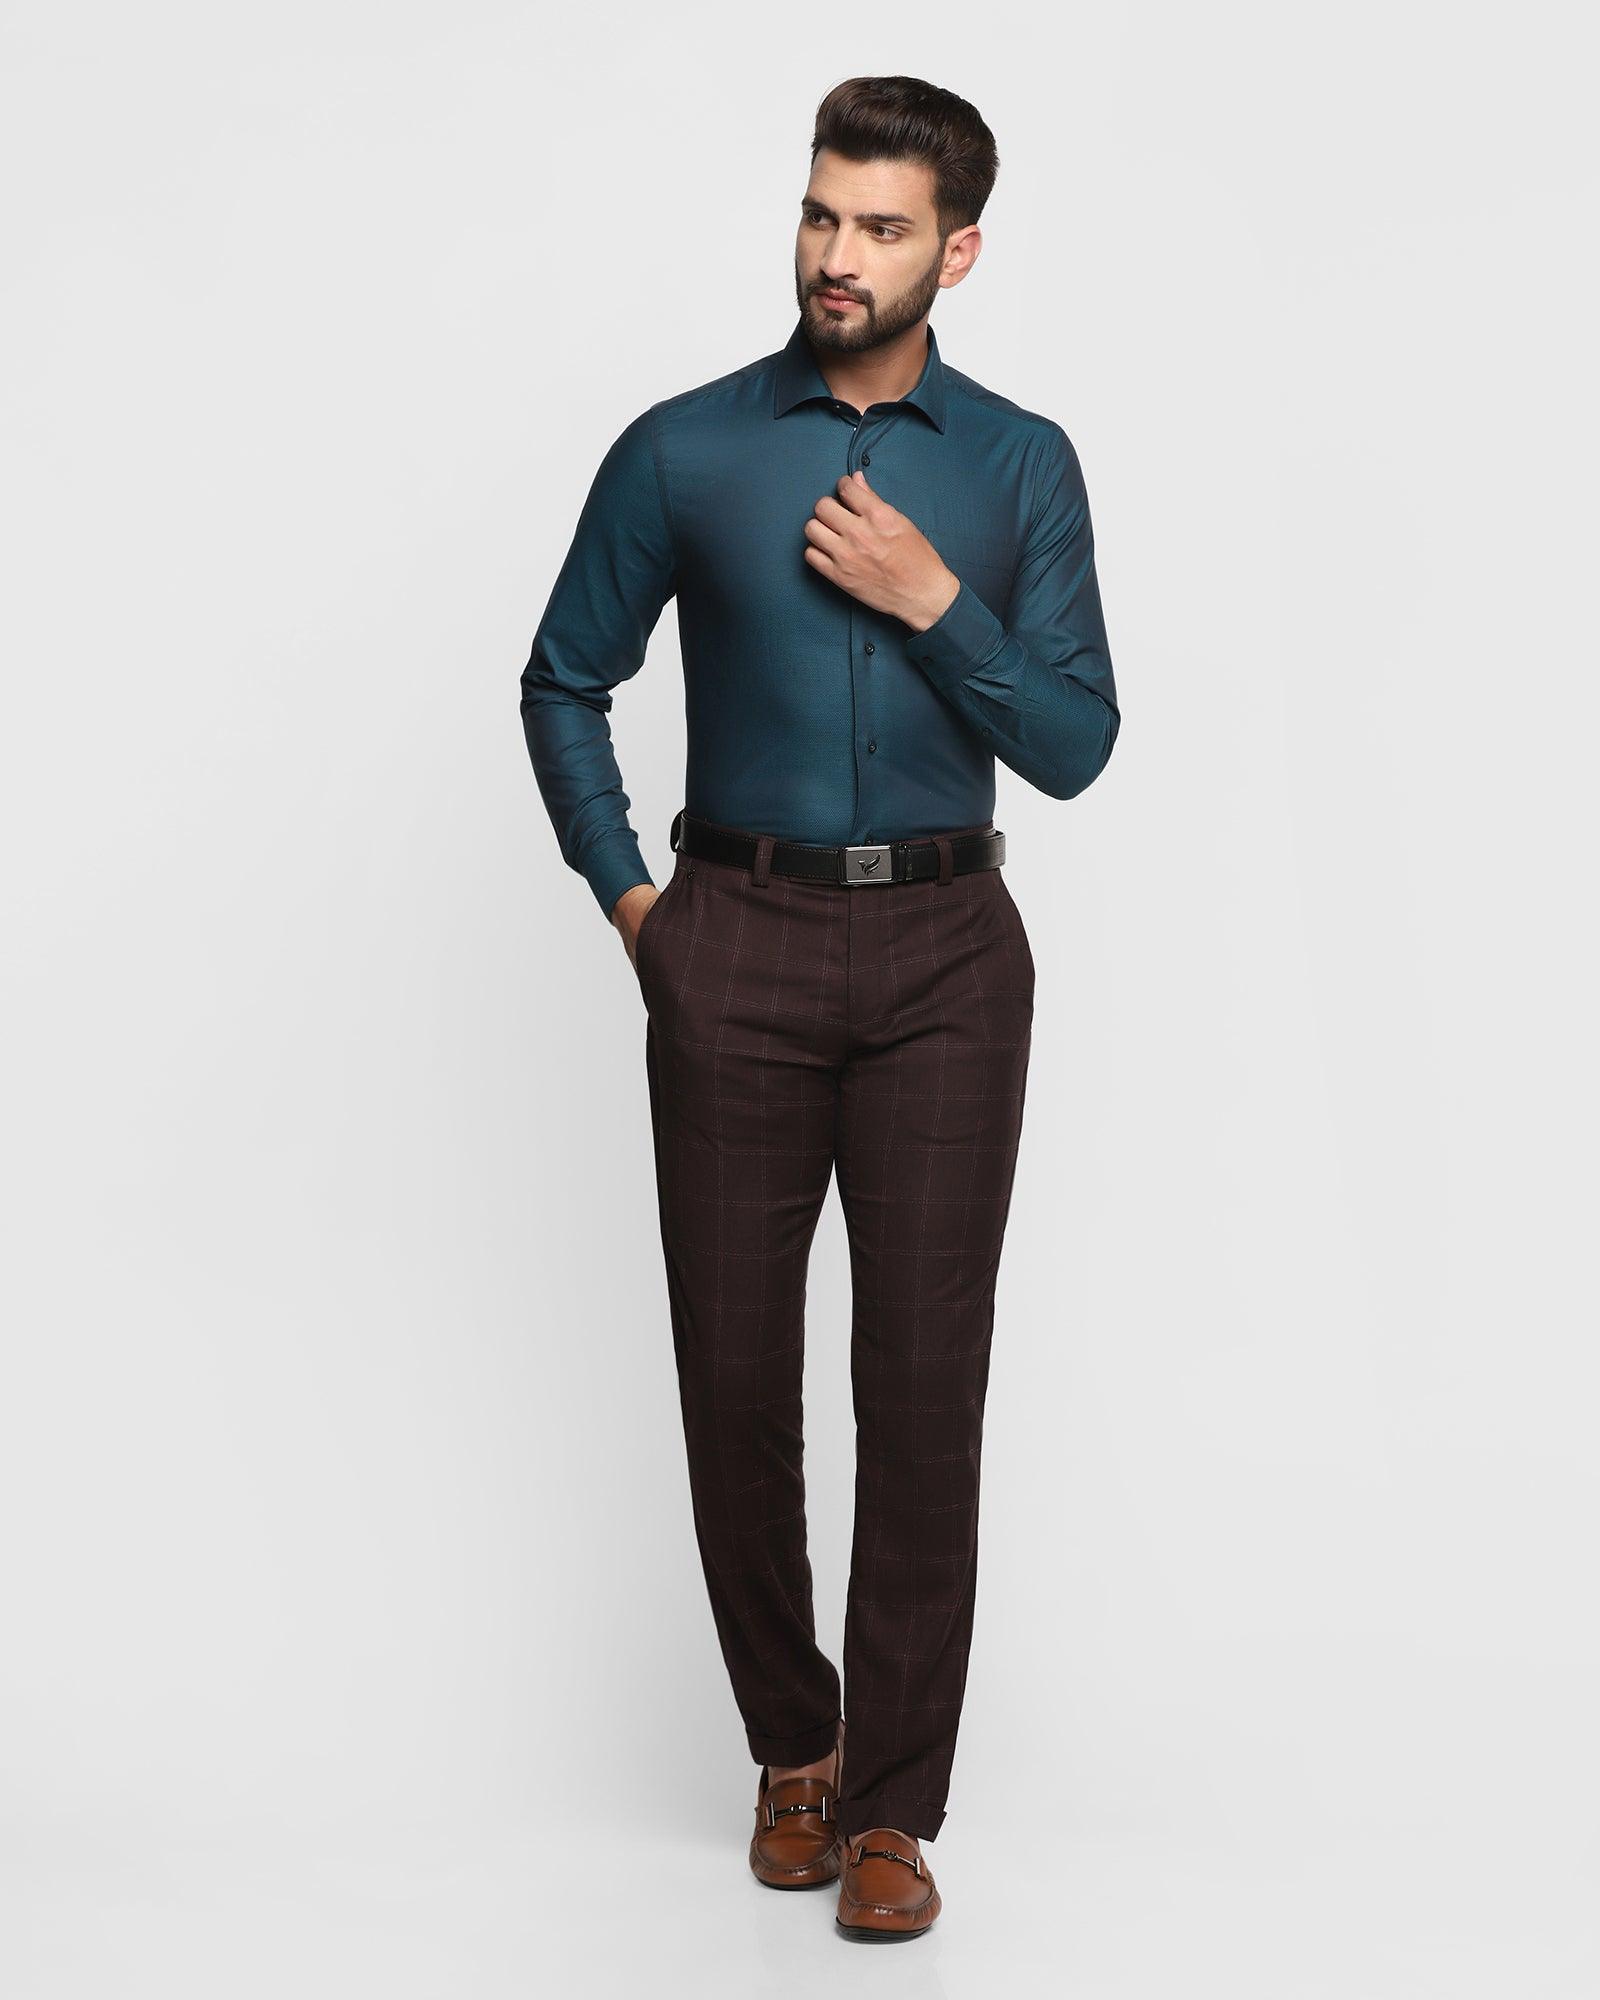 Green and blue | Menswear, Blazer fashion, Green pants men